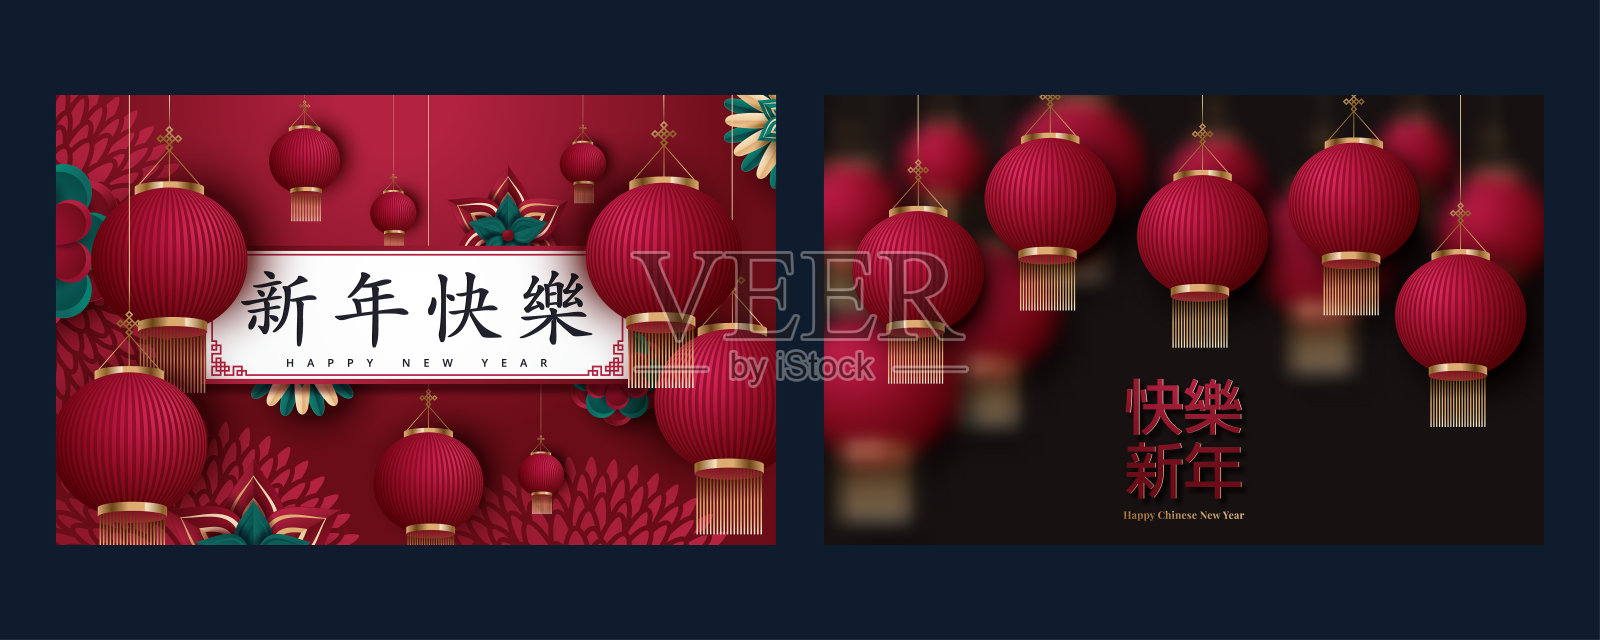 精美的2020年中国新年海报。翻译:新年快乐。矢量图插画图片素材